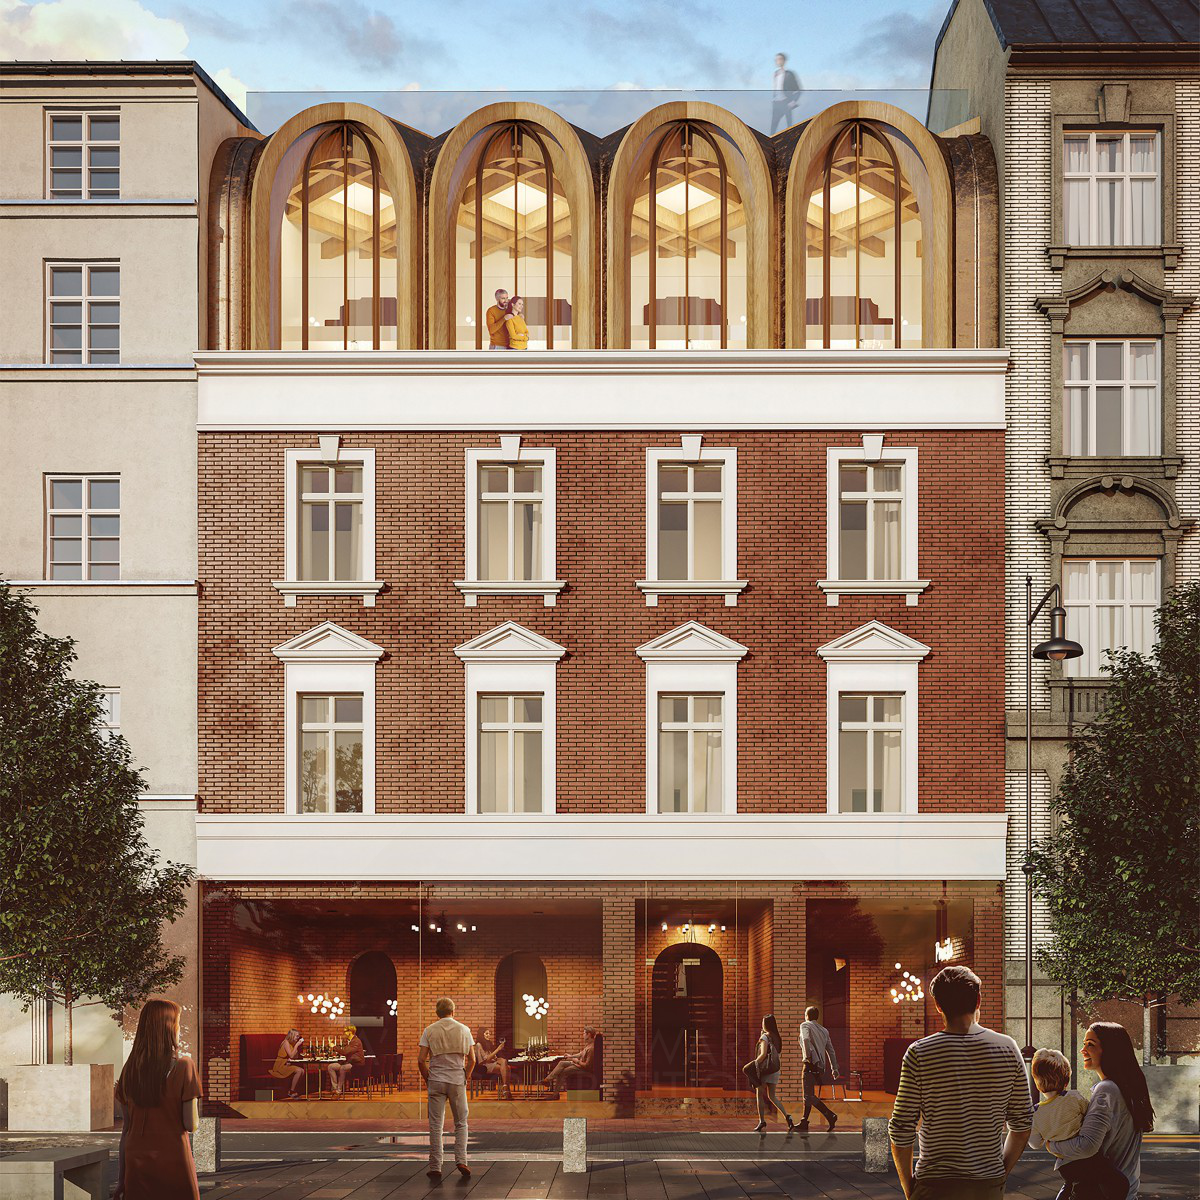 The Krakow Tenement Hotel